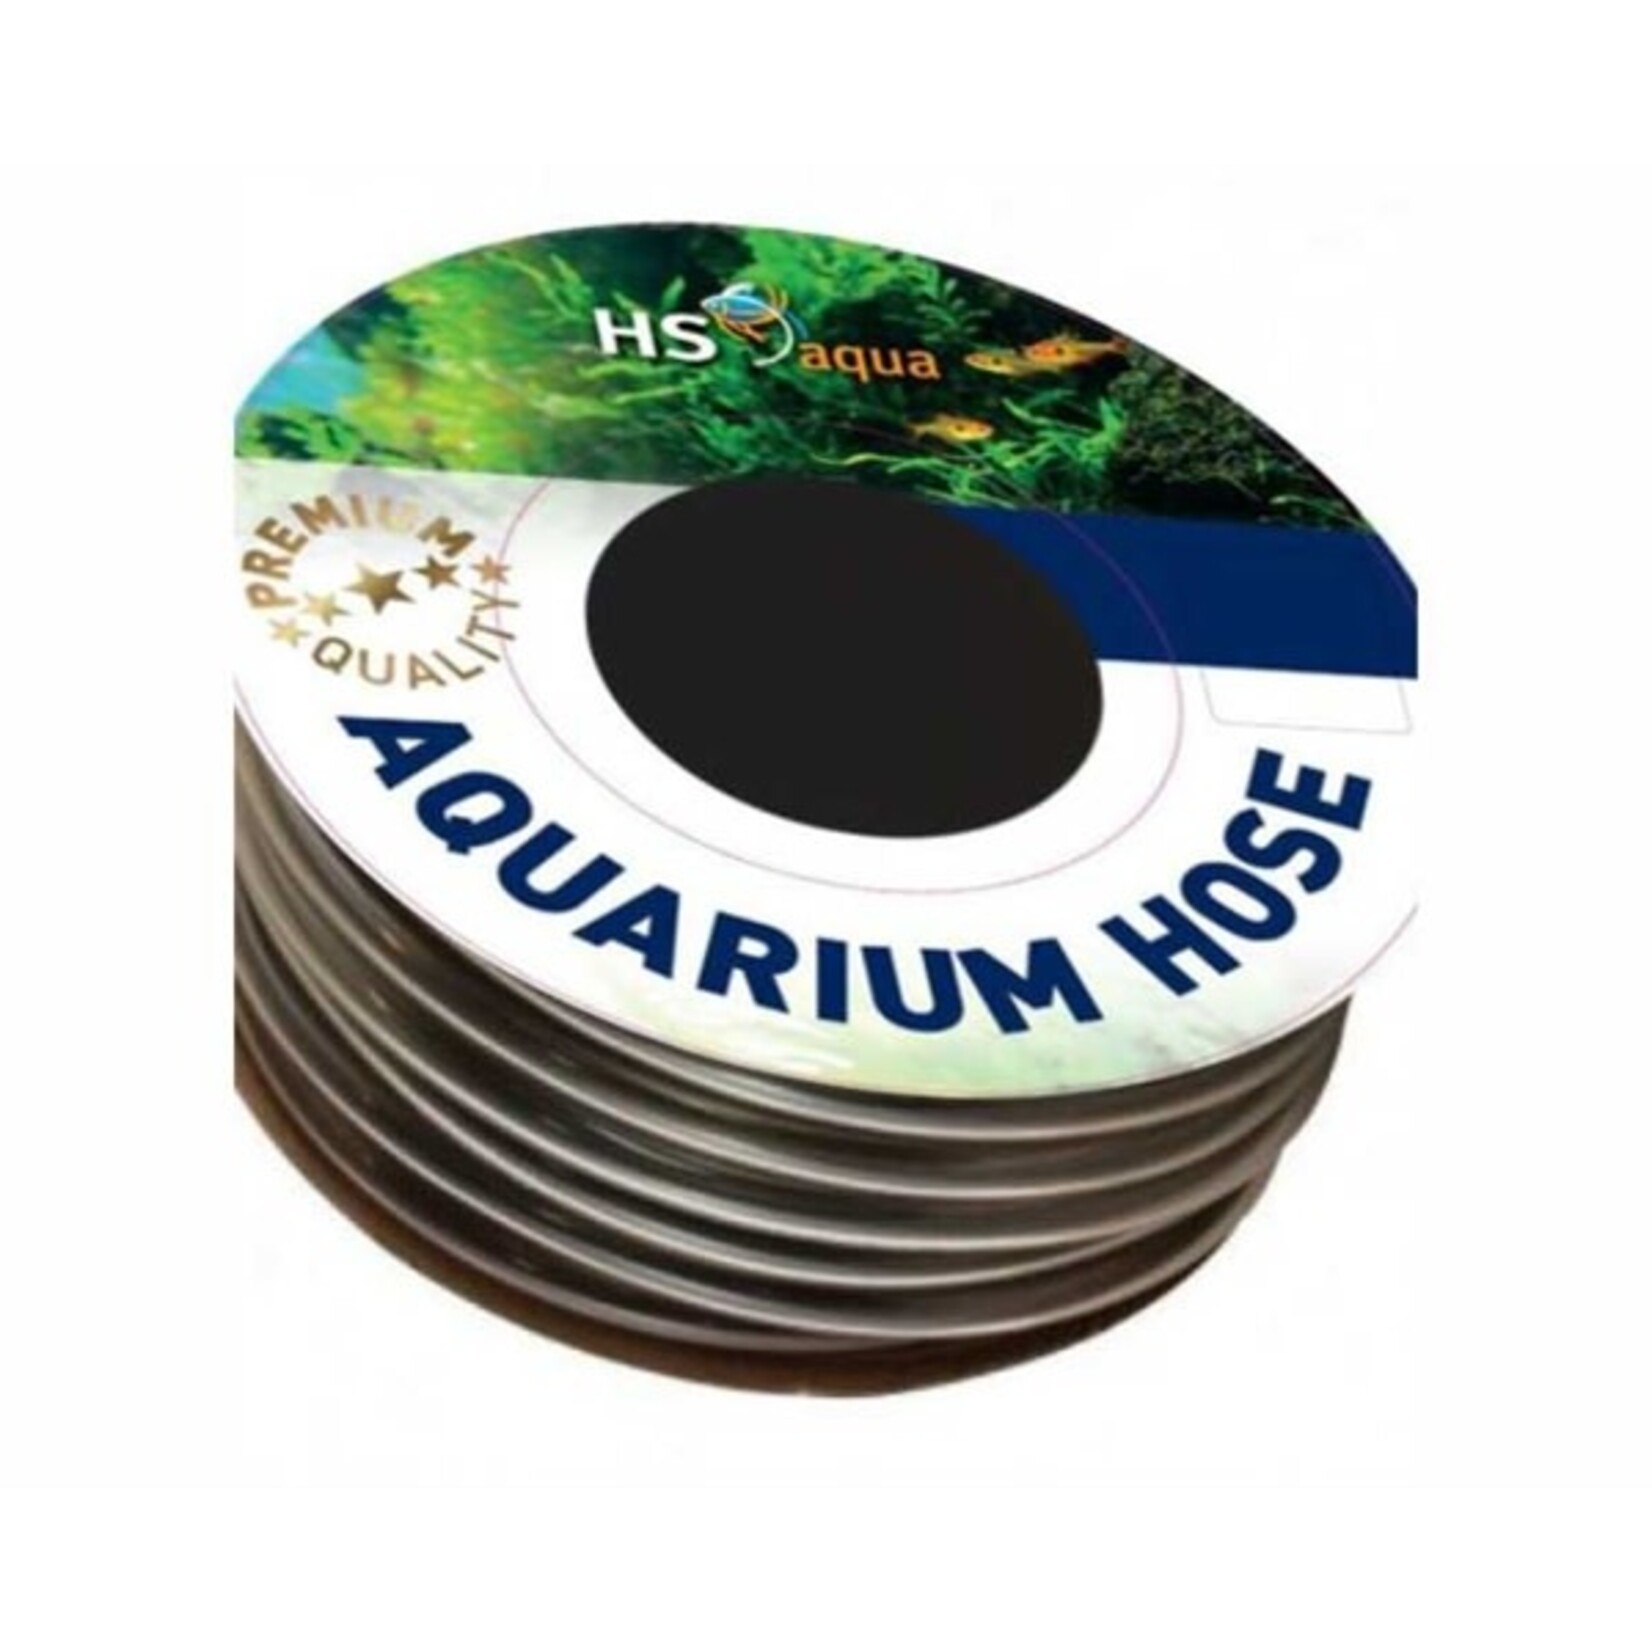 HS Aqua Anthraciet slang 9-12 mm per meter